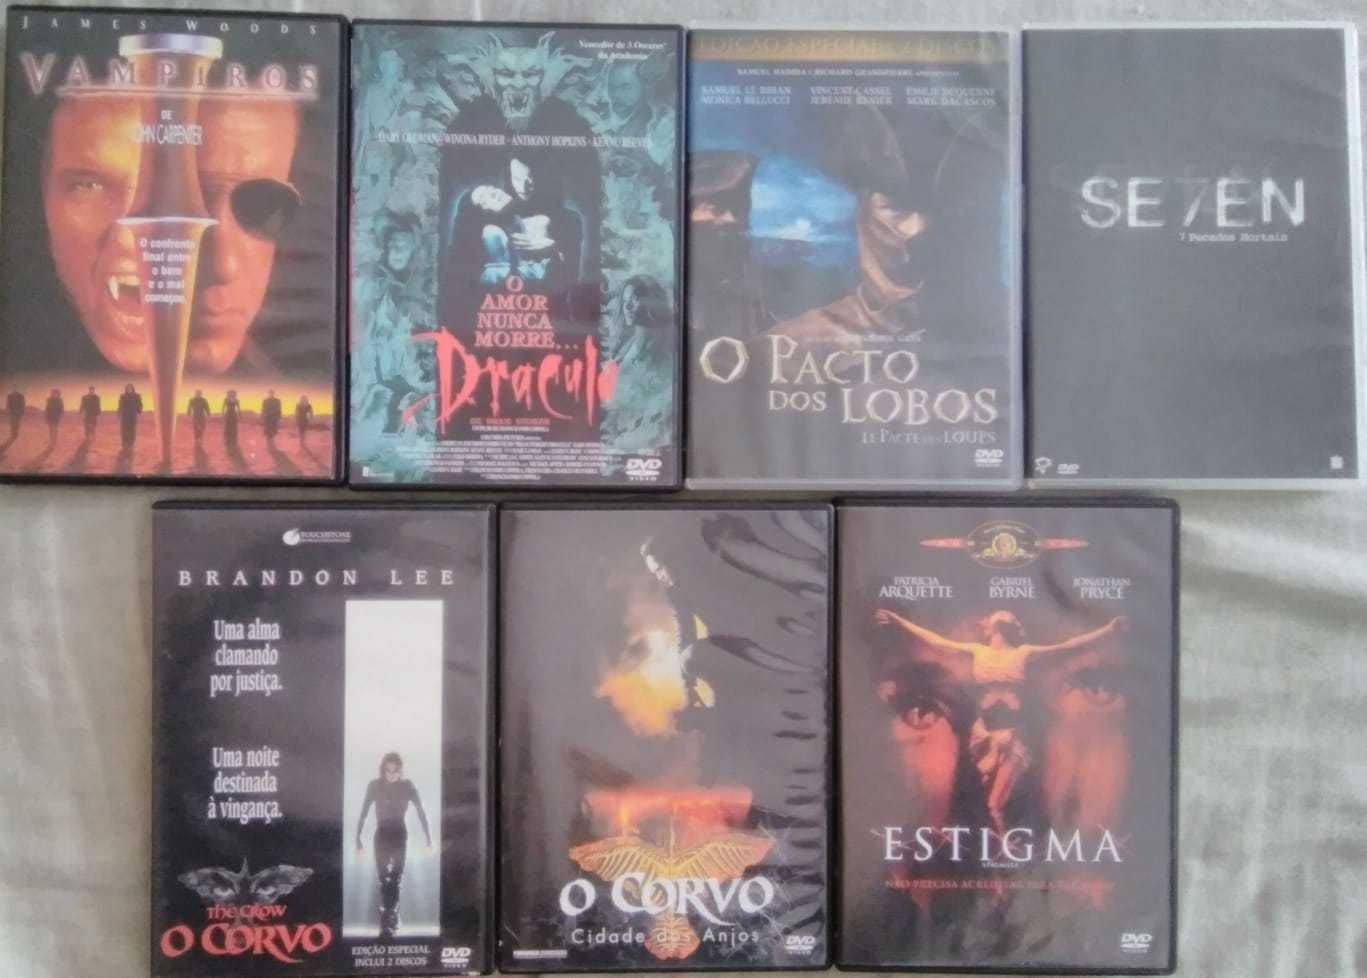 DVD's Vampiros, O Corvo, Seven, Pacto dos Lobos, Estigma